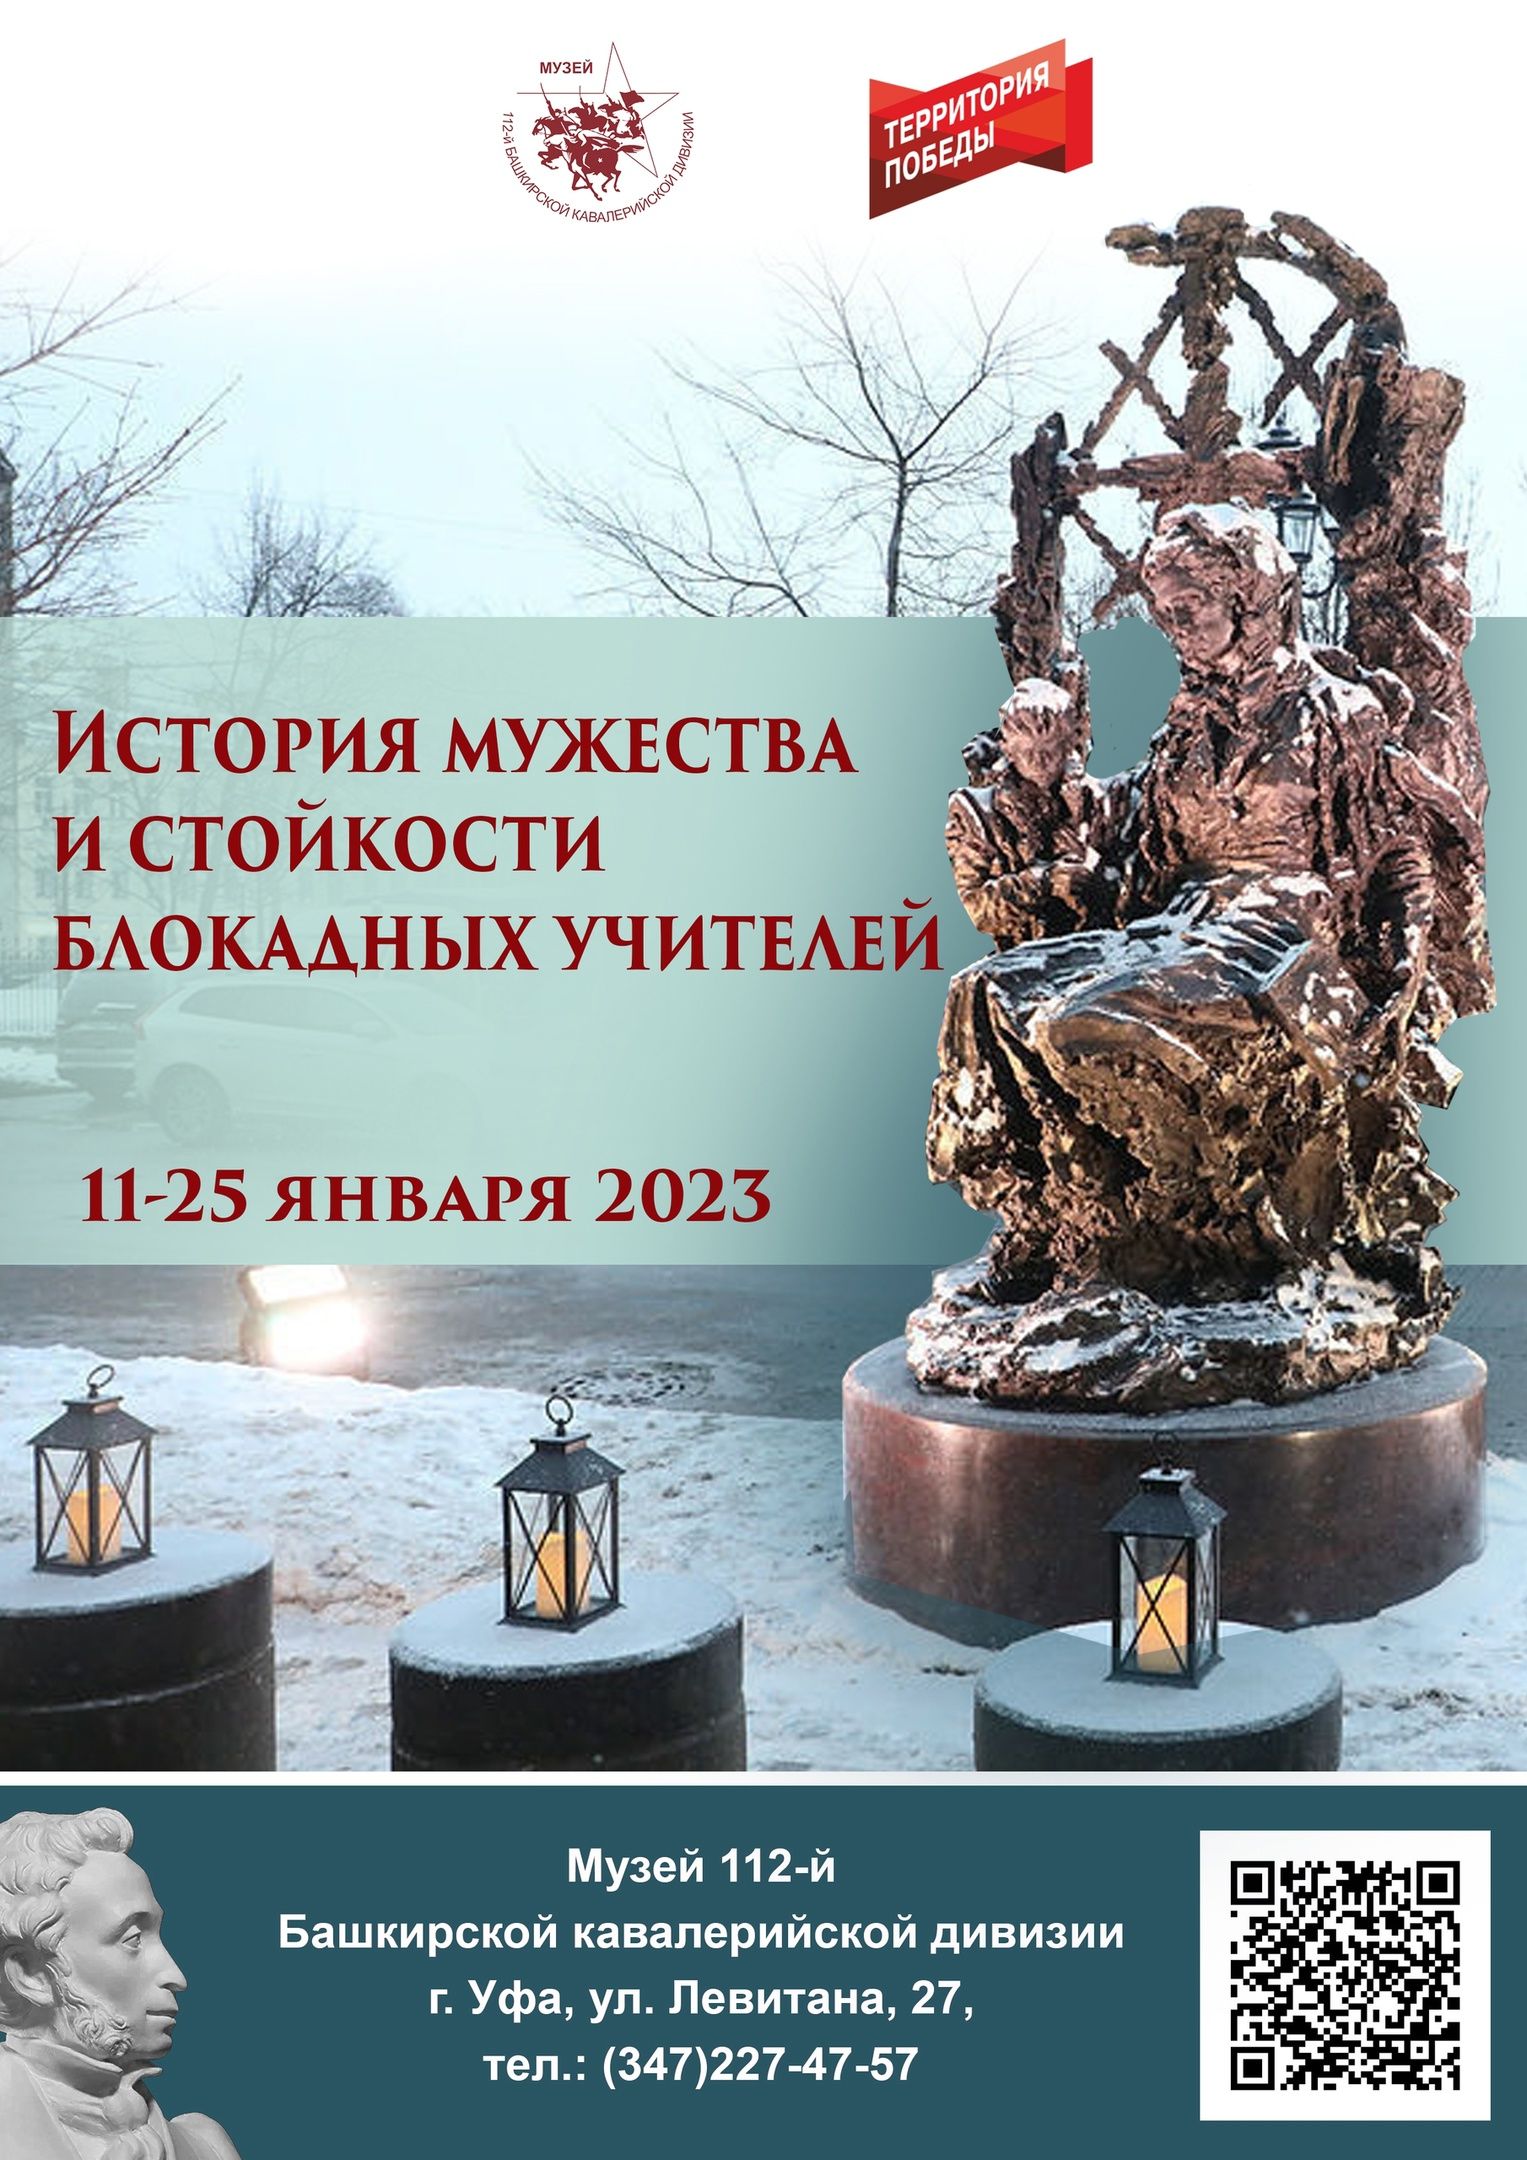 Музей 112-й Башкирской кавалерийской дивизии приглашает на мероприятия, посвященные блокаде Ленинграда